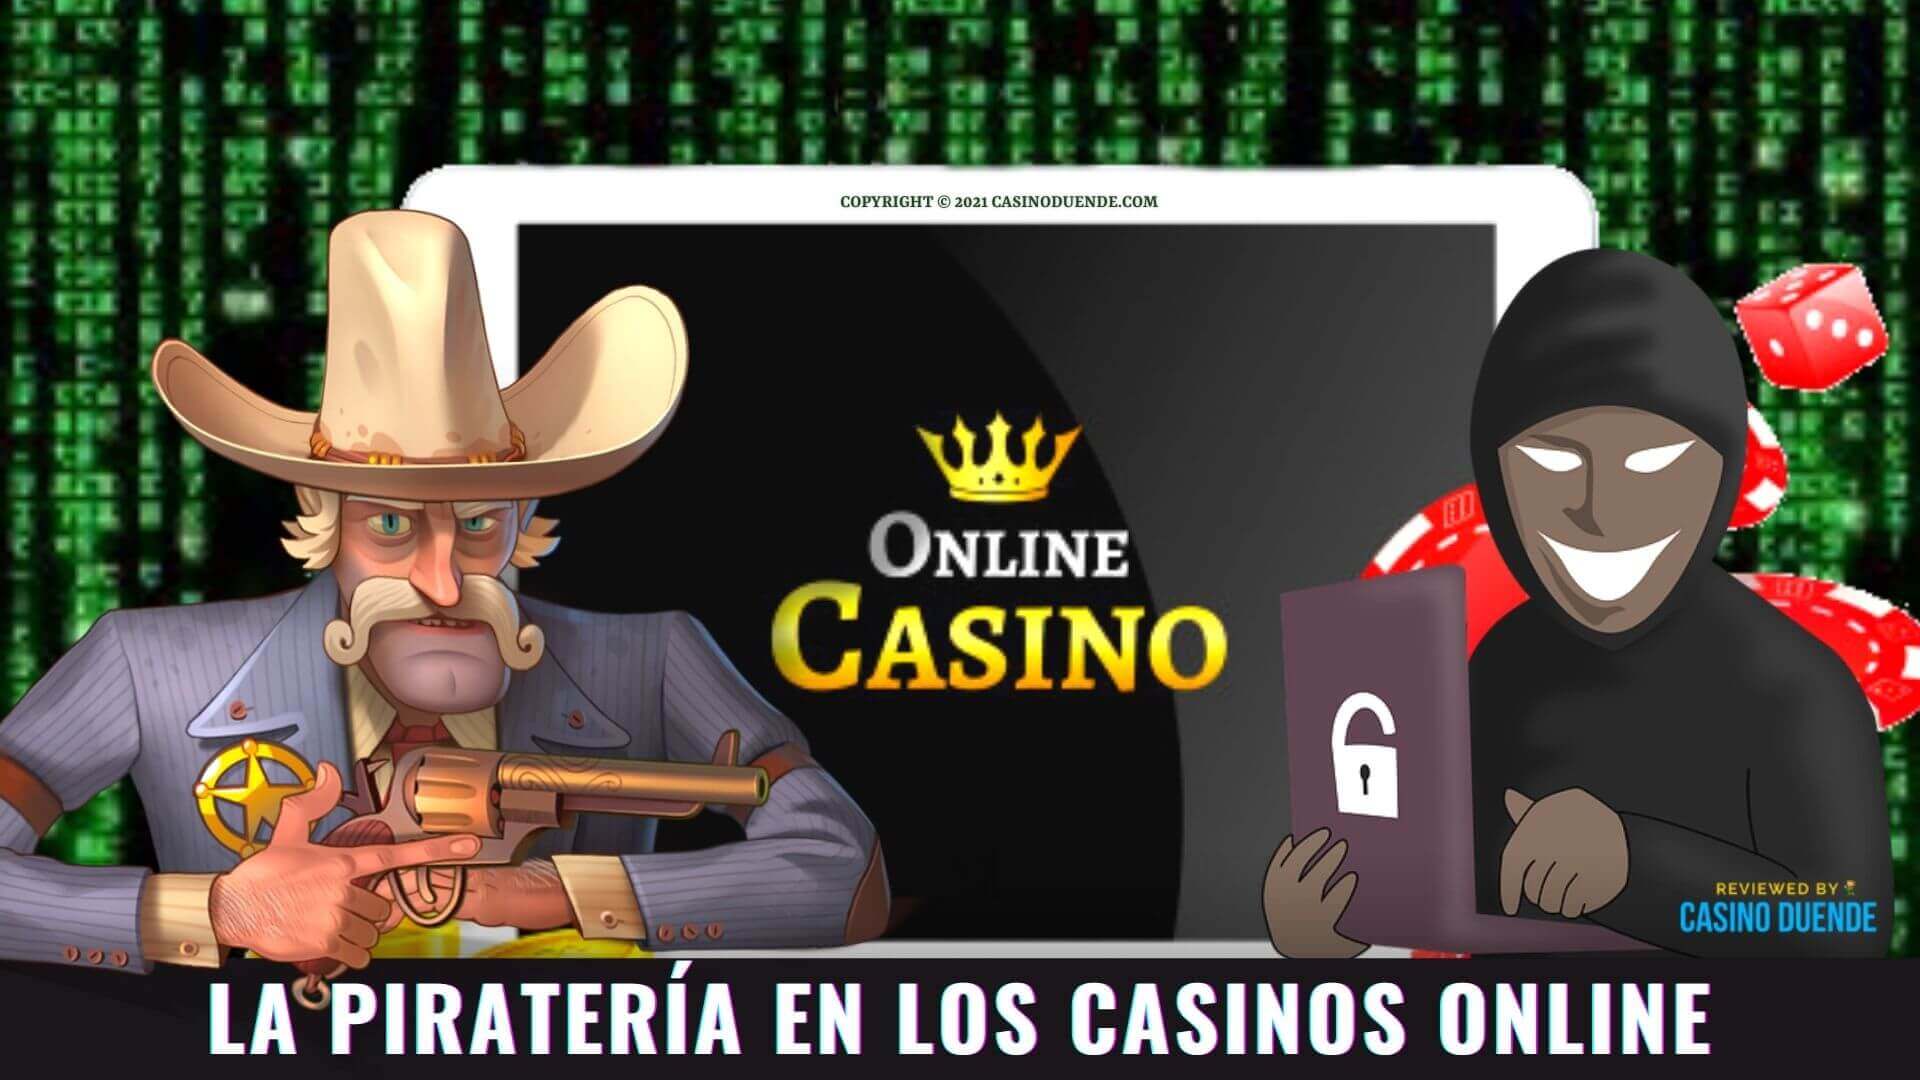 La piratería en los casinos online